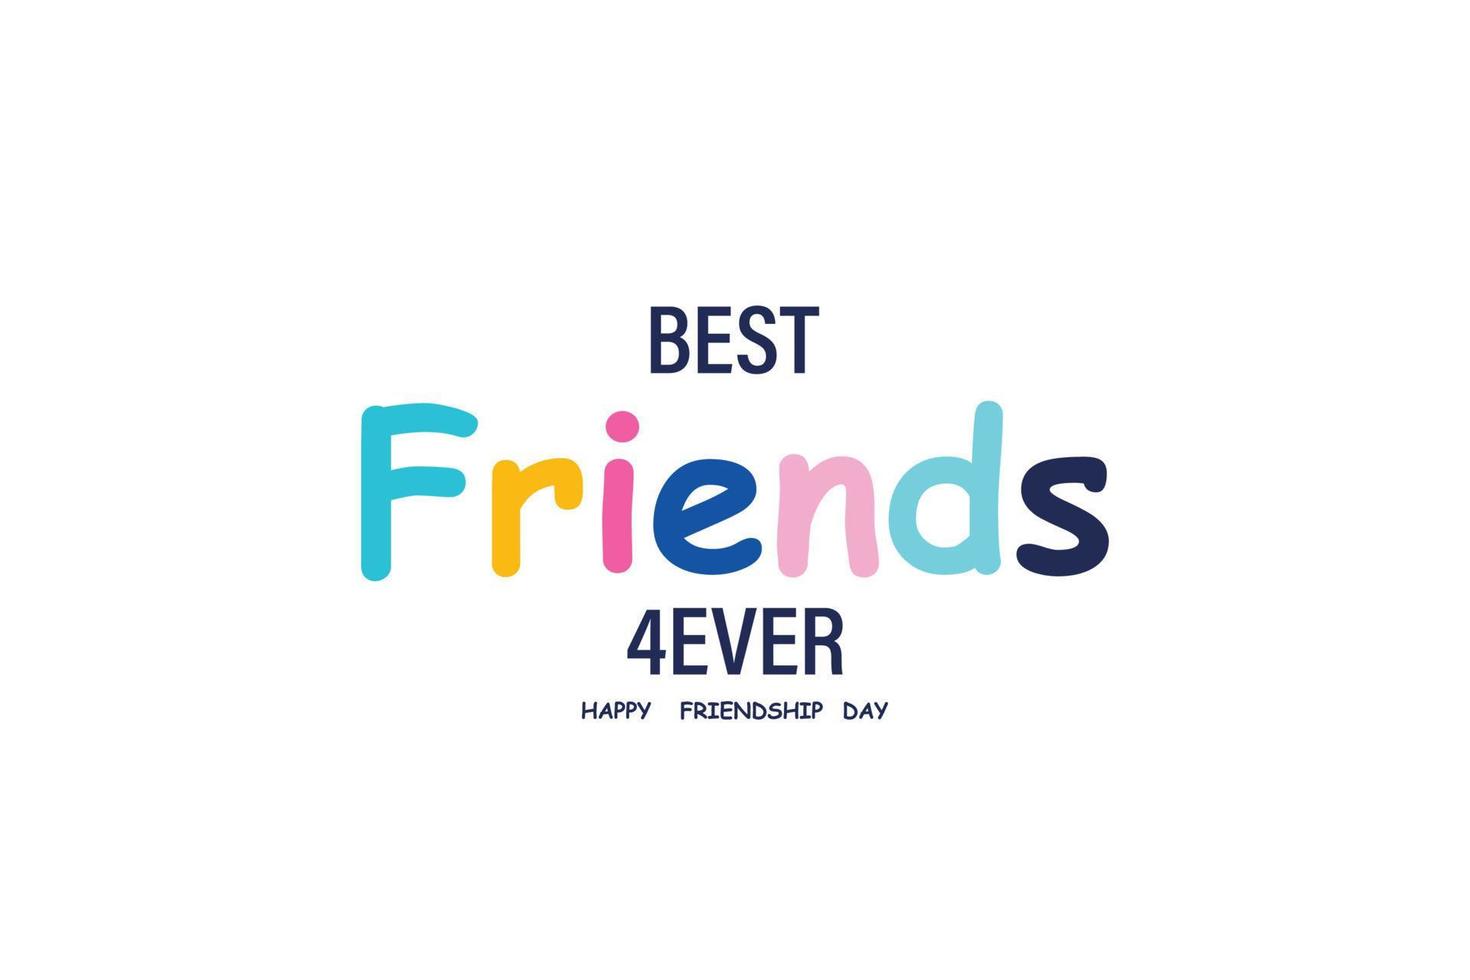 dia da amizade. melhores amigos para sempre. cartaz banner ou cartão de felicitações dia da amizade. eps10 vetor